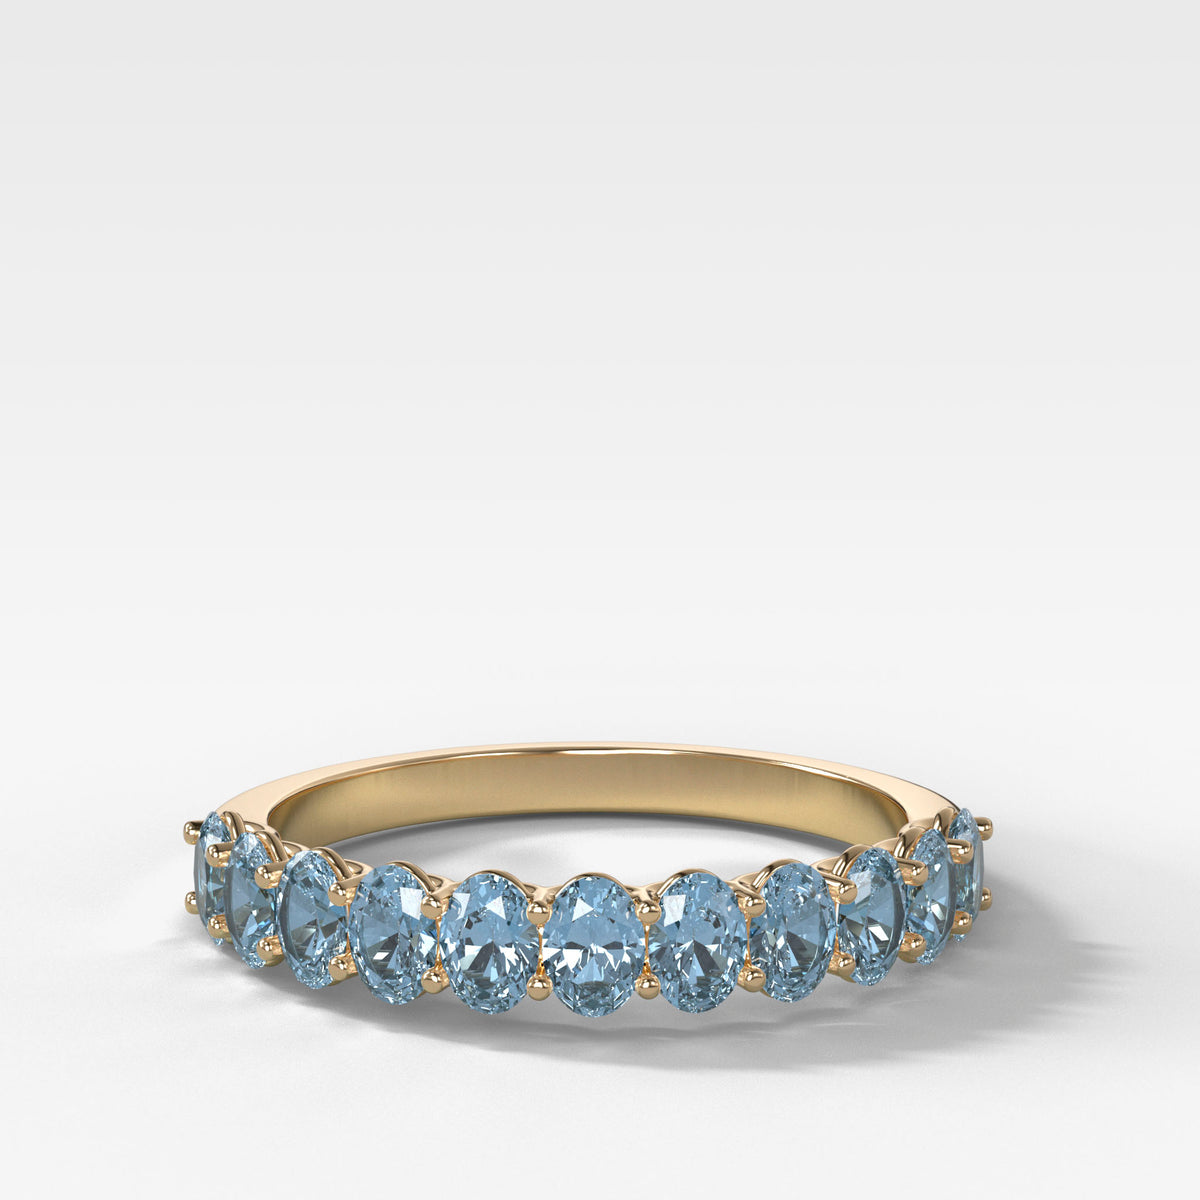 Petite Shared Prong Wedding Band with Aquamarine Oval Gemstones